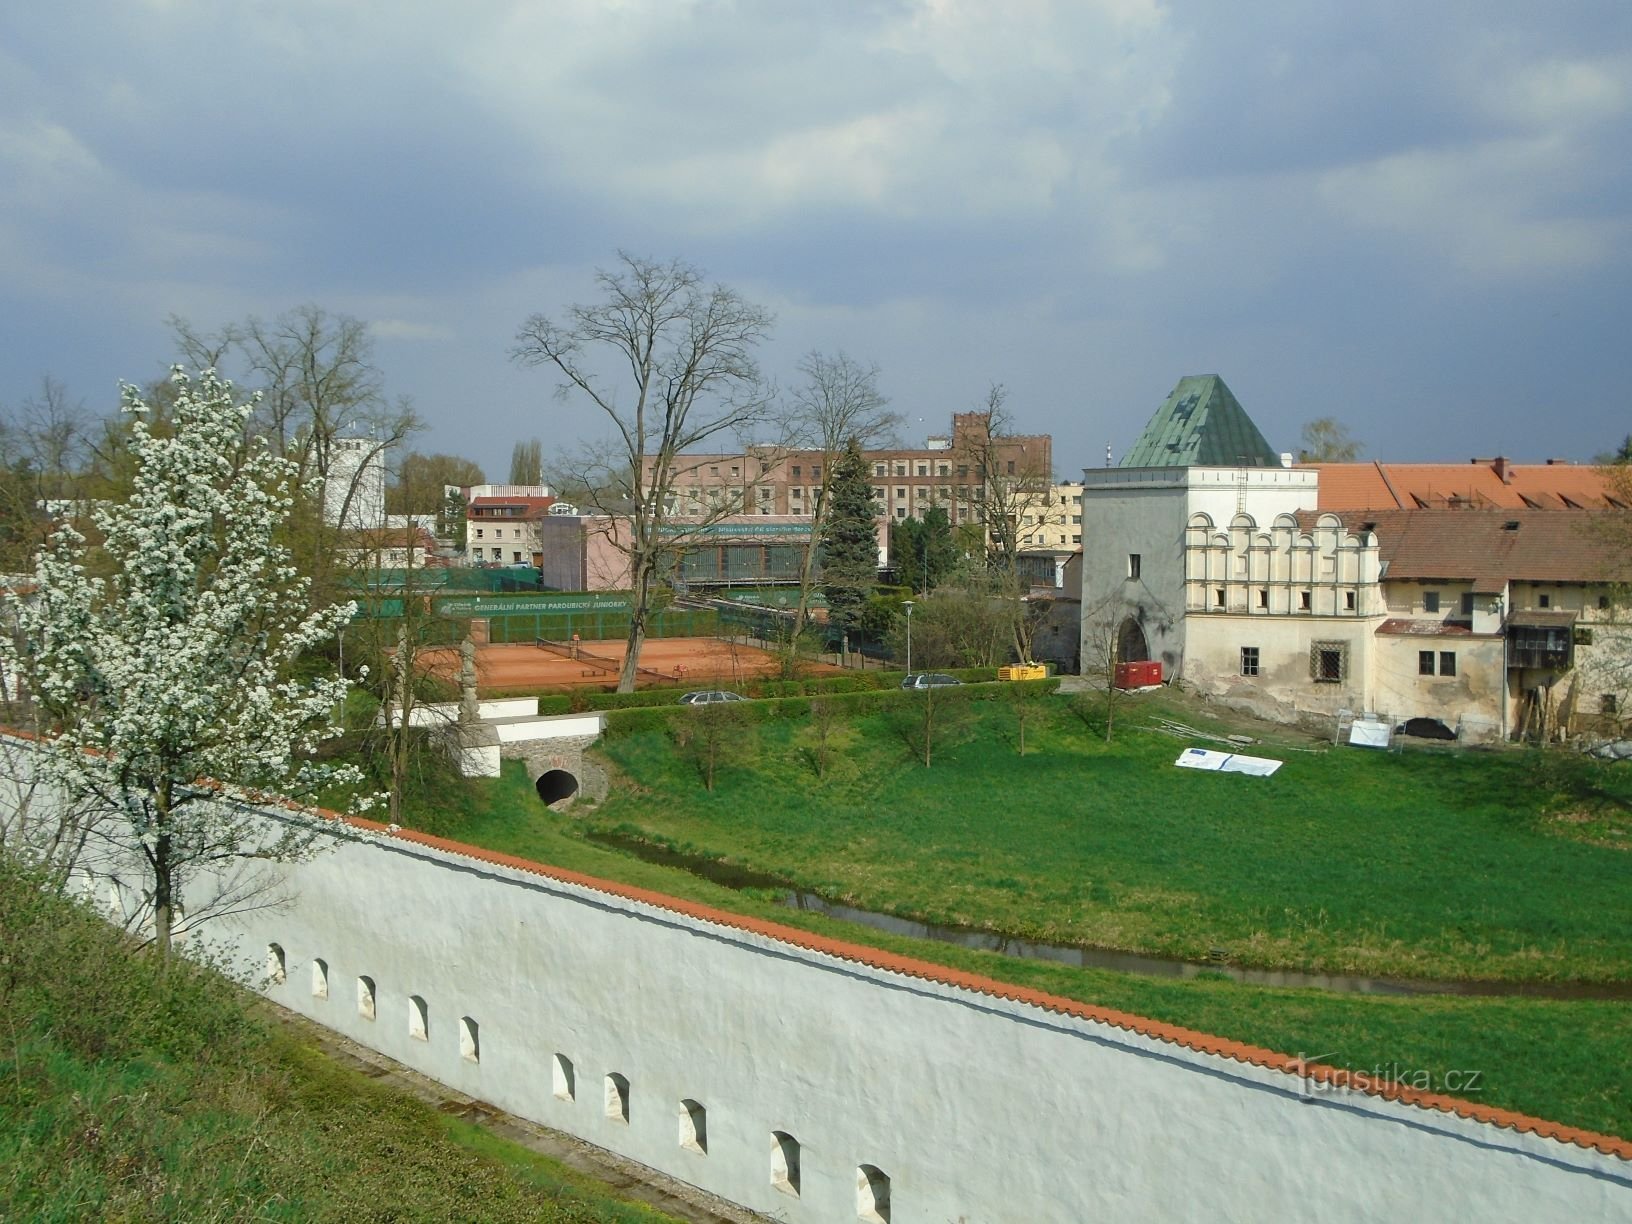 Widok na most między zamkiem a Příhrádkiem (Pardubice, 17.4.2018)